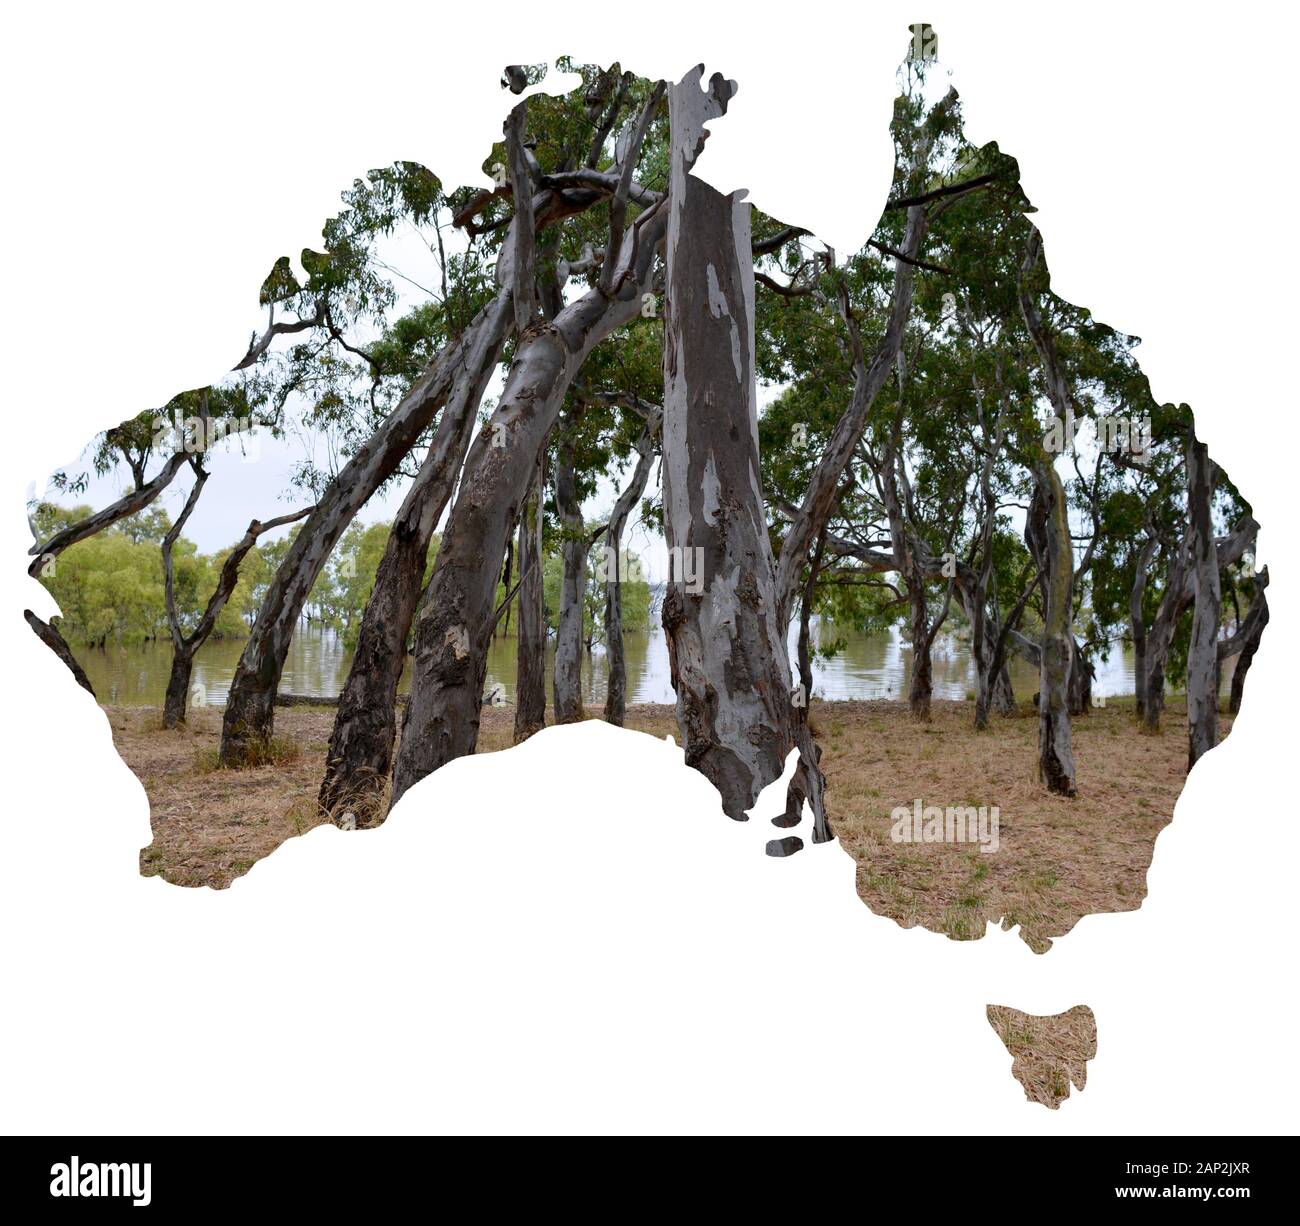 Eine Reihe Von Ausblicken auf die Naturlandschaften und die Landschaft Australiens, die in eine Karte der landschaftlich geschwungenen Bäume aufgenommen wurden Stockfoto